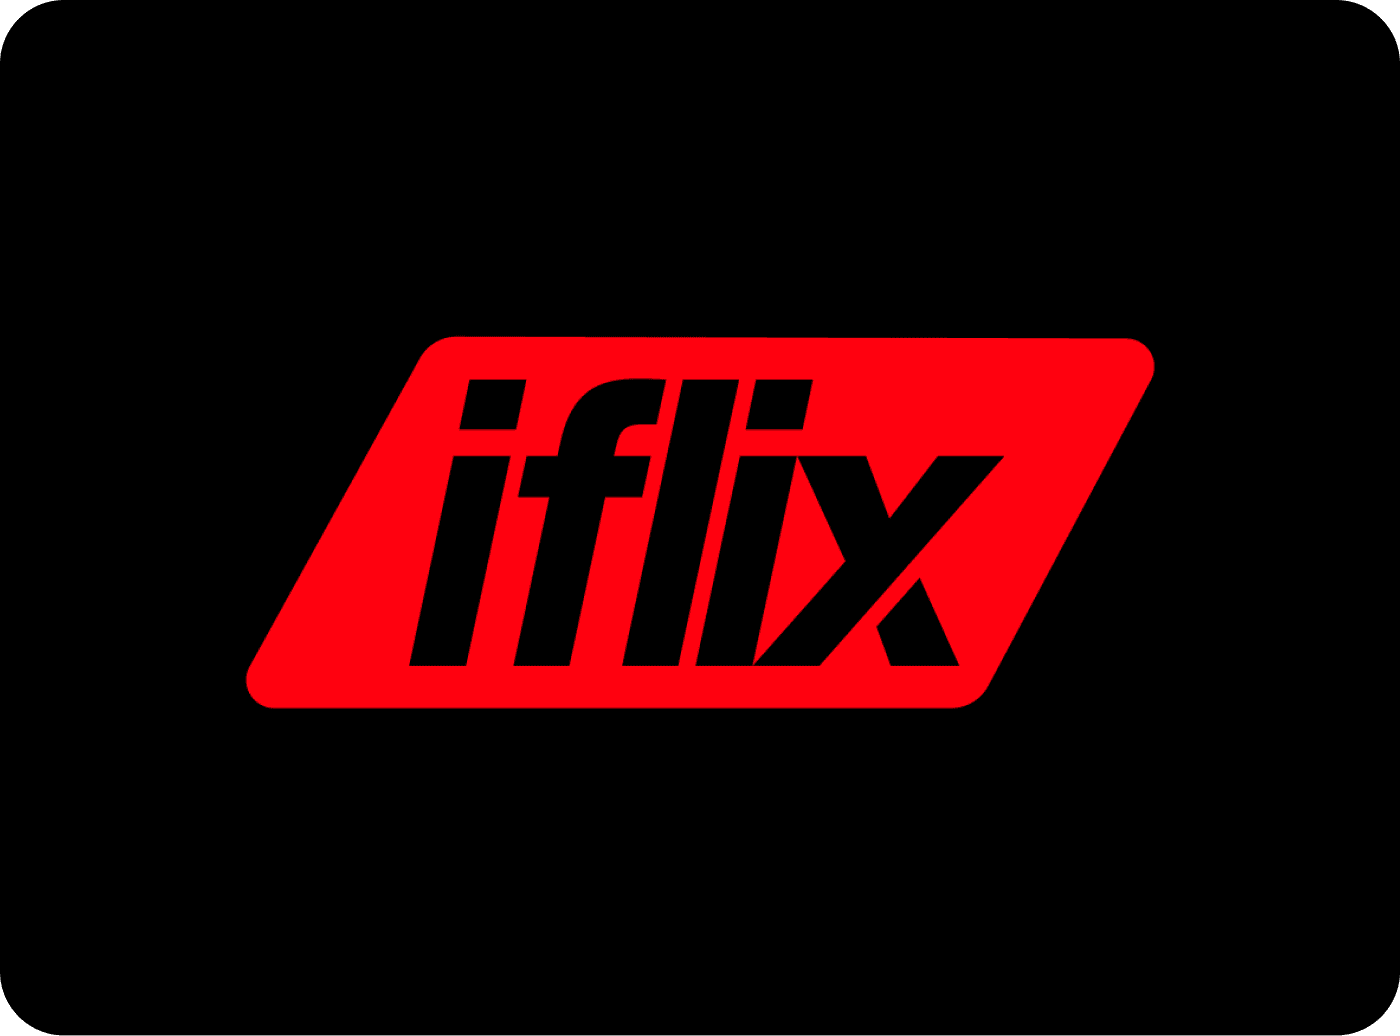 Iflix